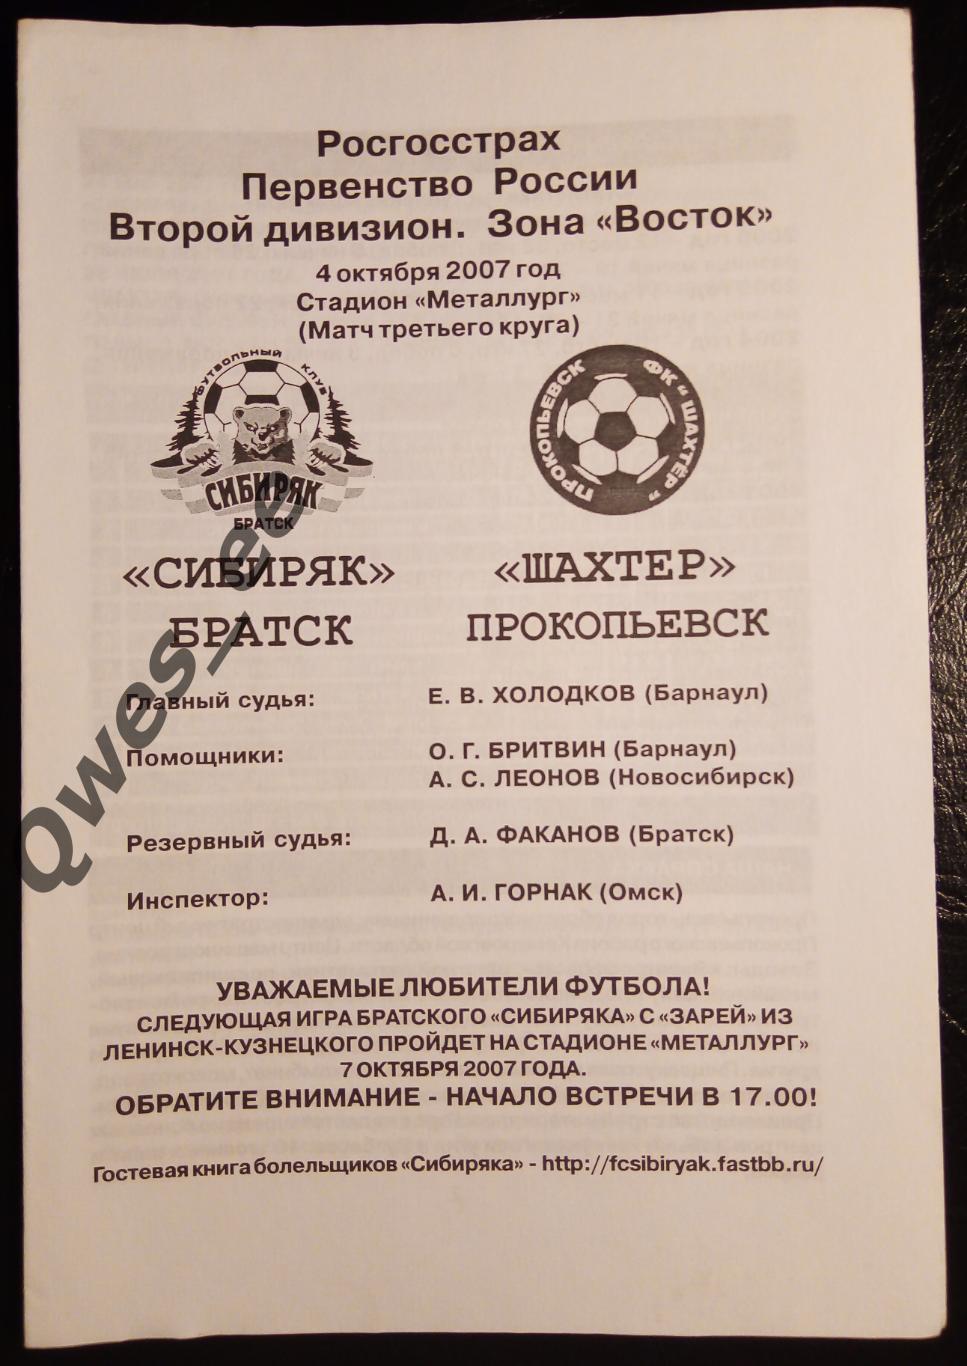 Сибиряк Братск - Шахтер Прокопьевск 4 октября 2007 матч третьего круга